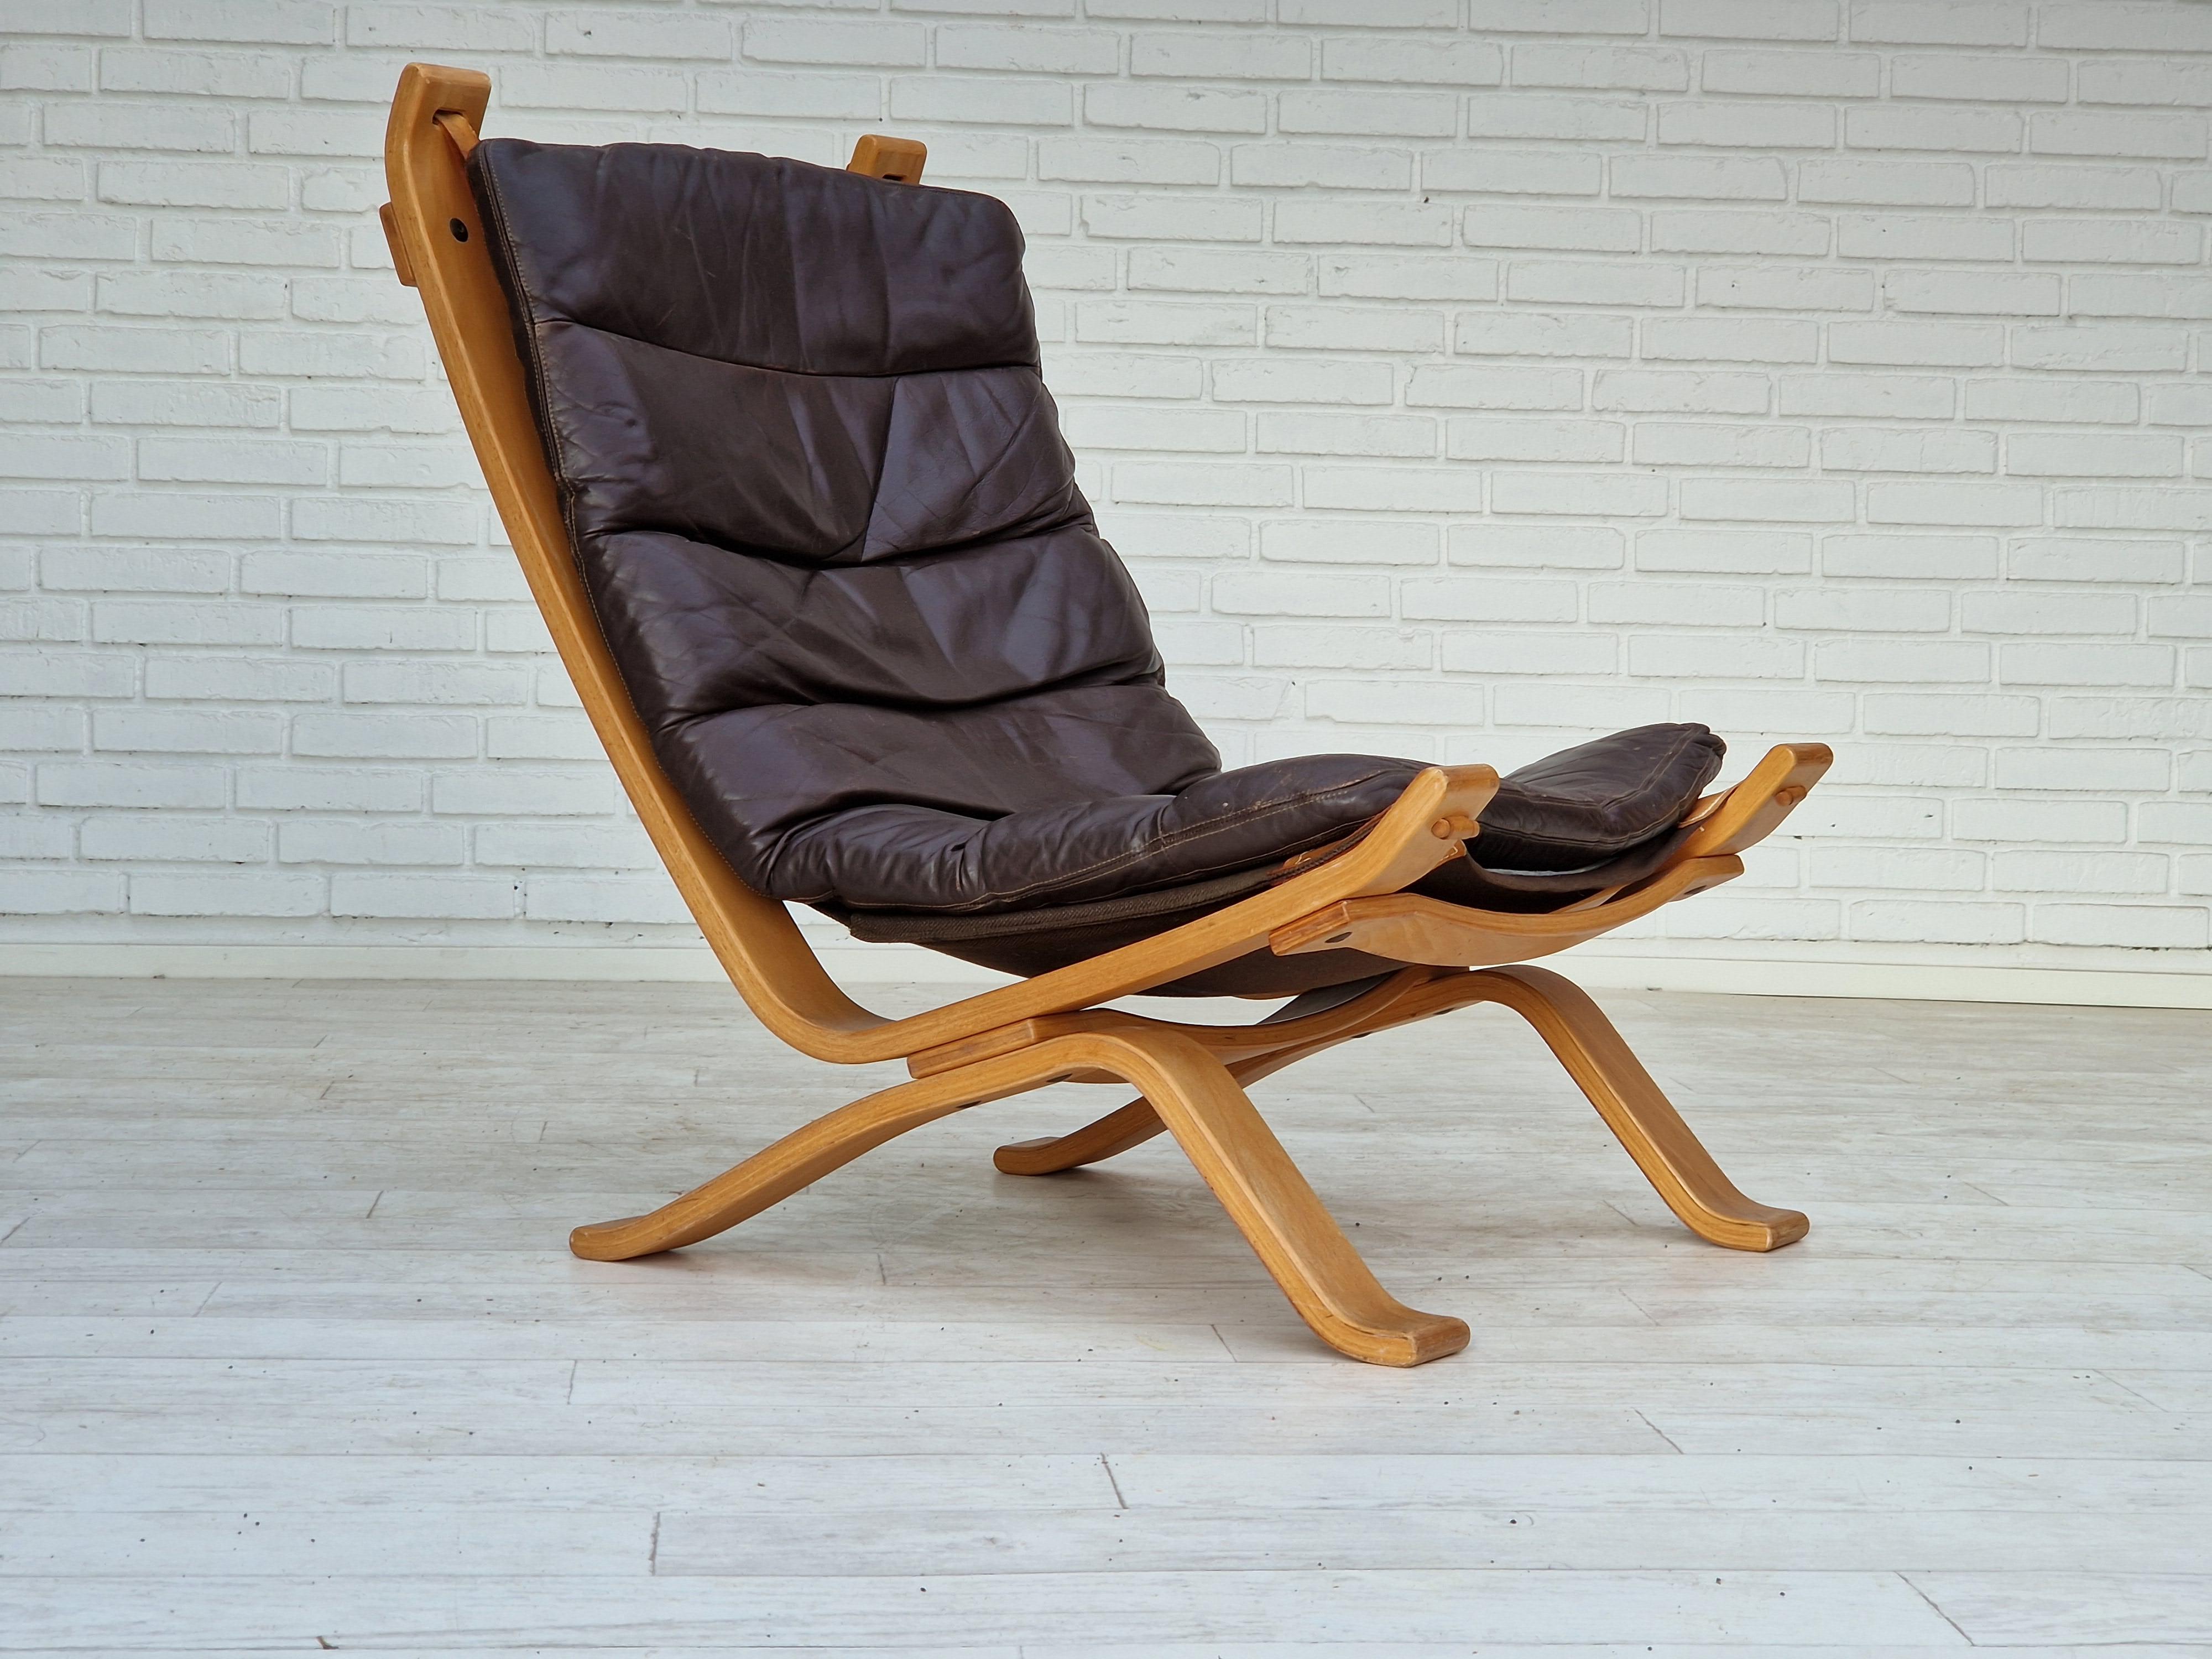 1970er Jahre, dänisches Design von Bramin Møbler. Sessel in sehr gutem Originalzustand: keine Gerüche und keine Flecken. Braunes Leder, gebogenes Sperrholz, Leinwand. Abnehmbares Kissen. Hergestellt vom dänischen Möbelhersteller Bramin Møbler um